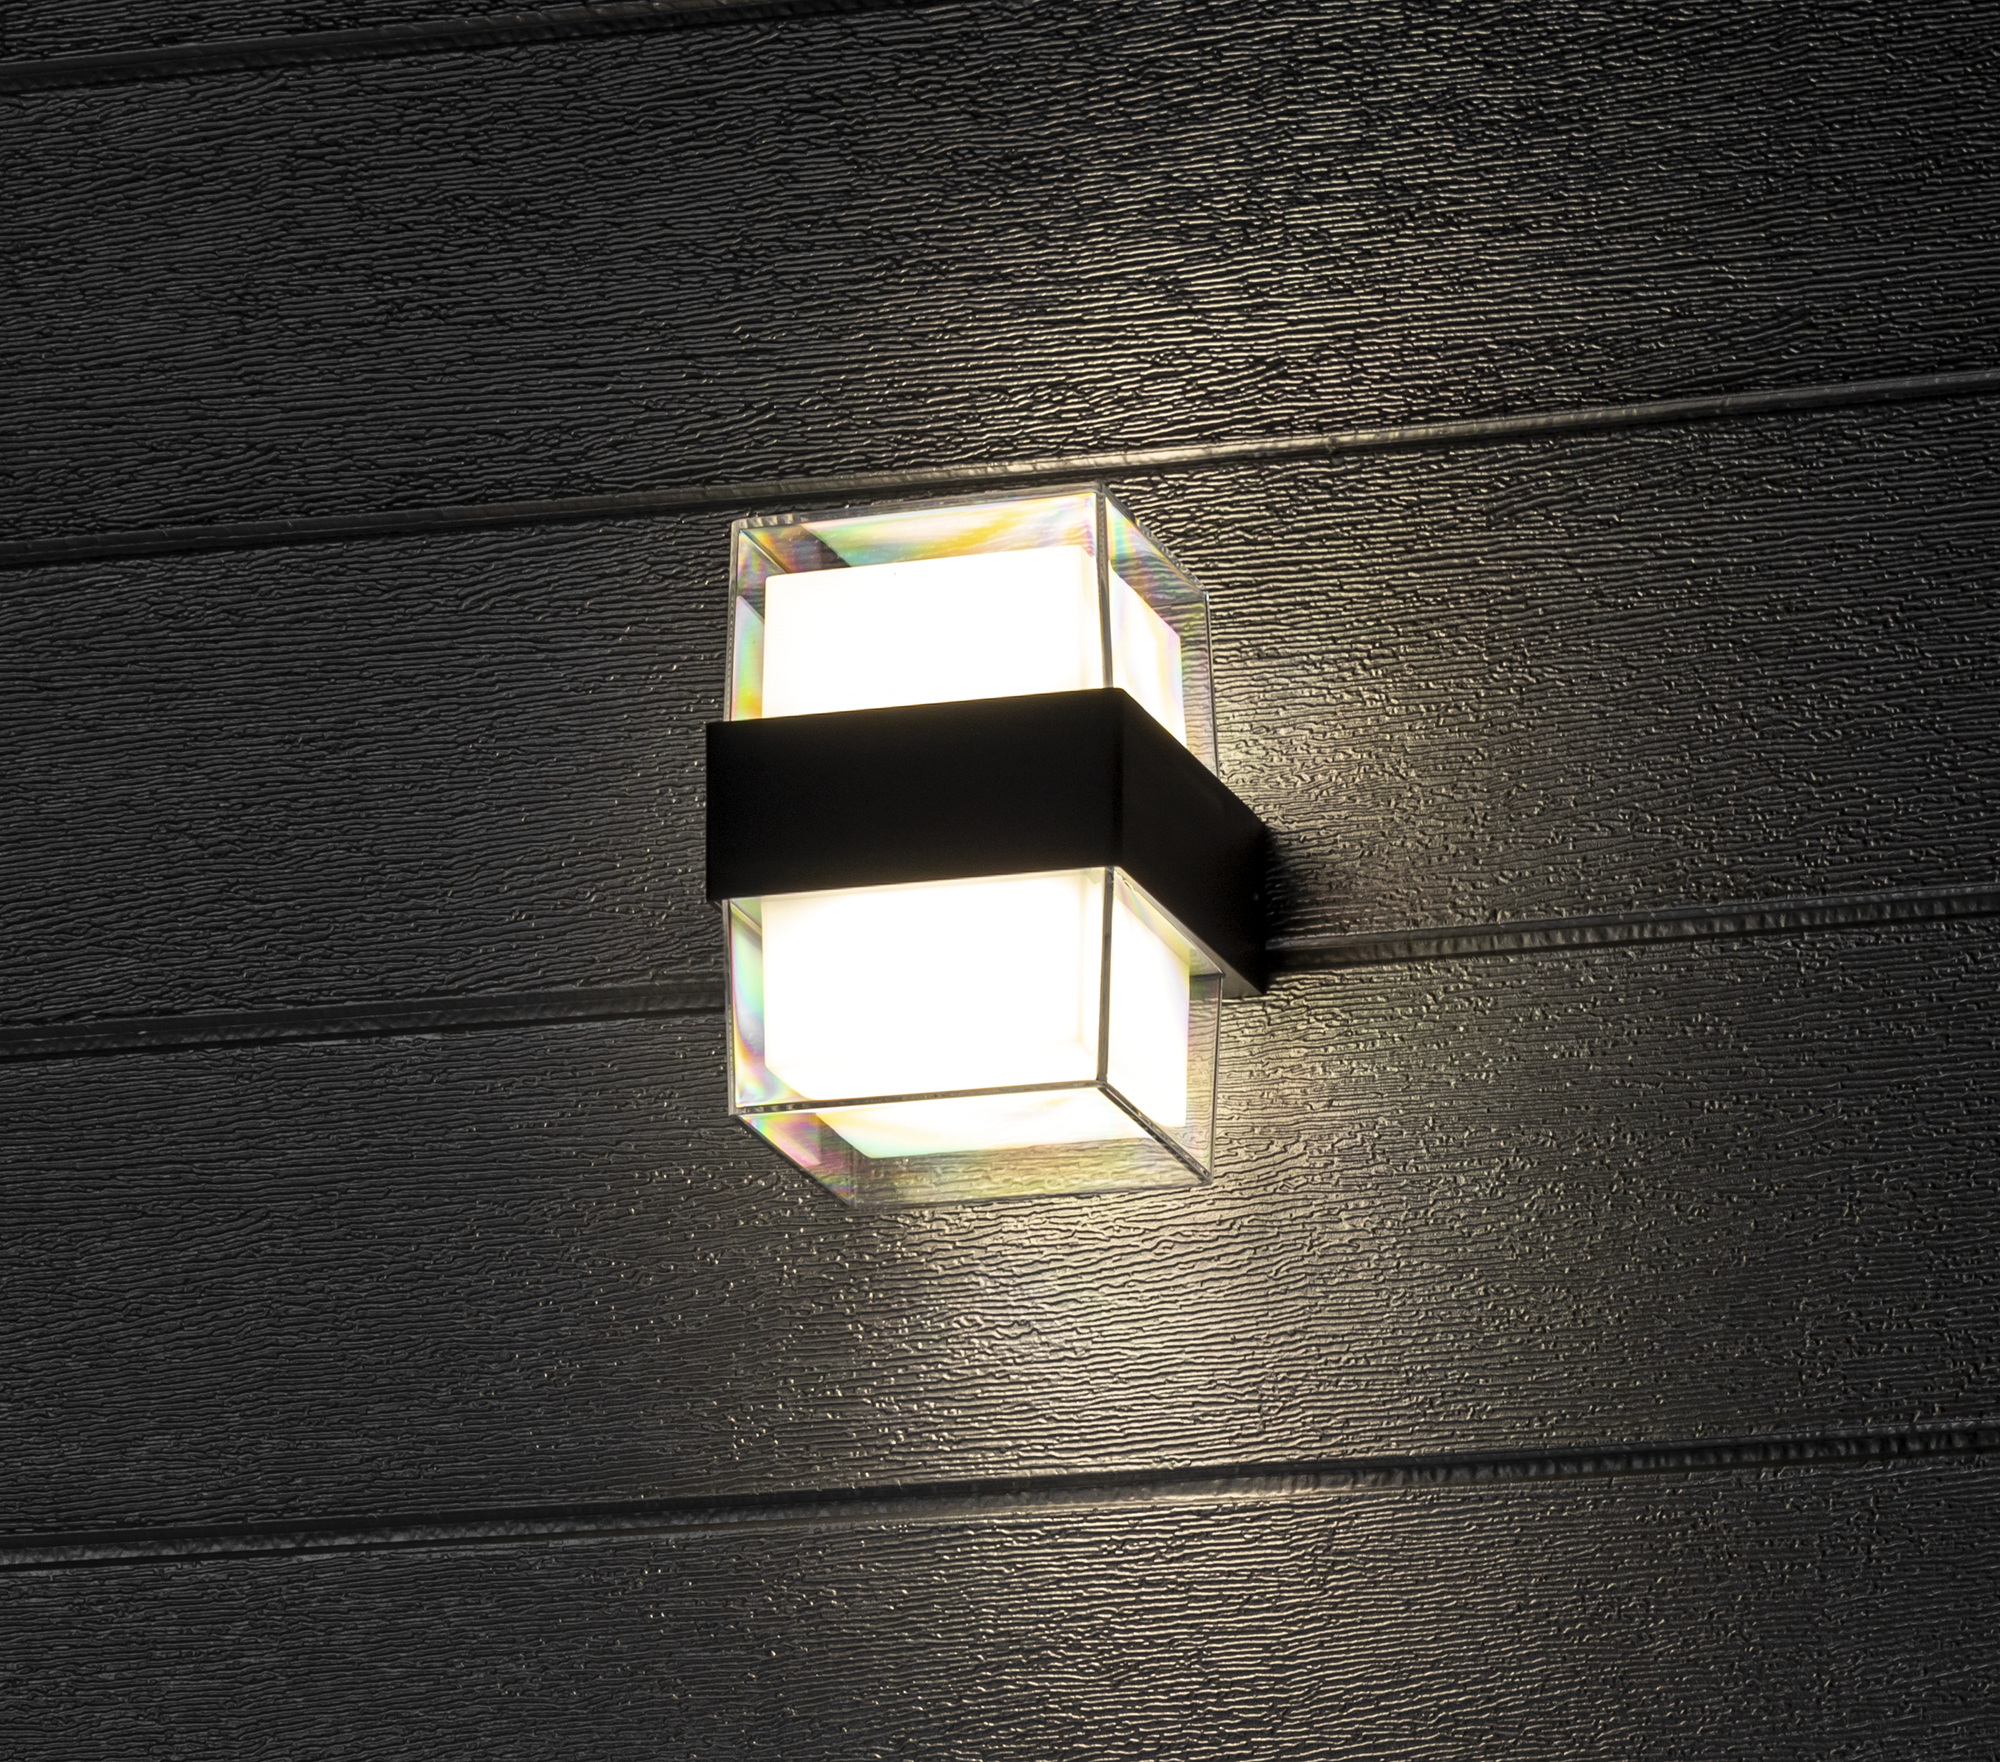 Светильник настенный светодиодный уличный Duwi «Nuovo» 24781 8 IP54 цвет черный